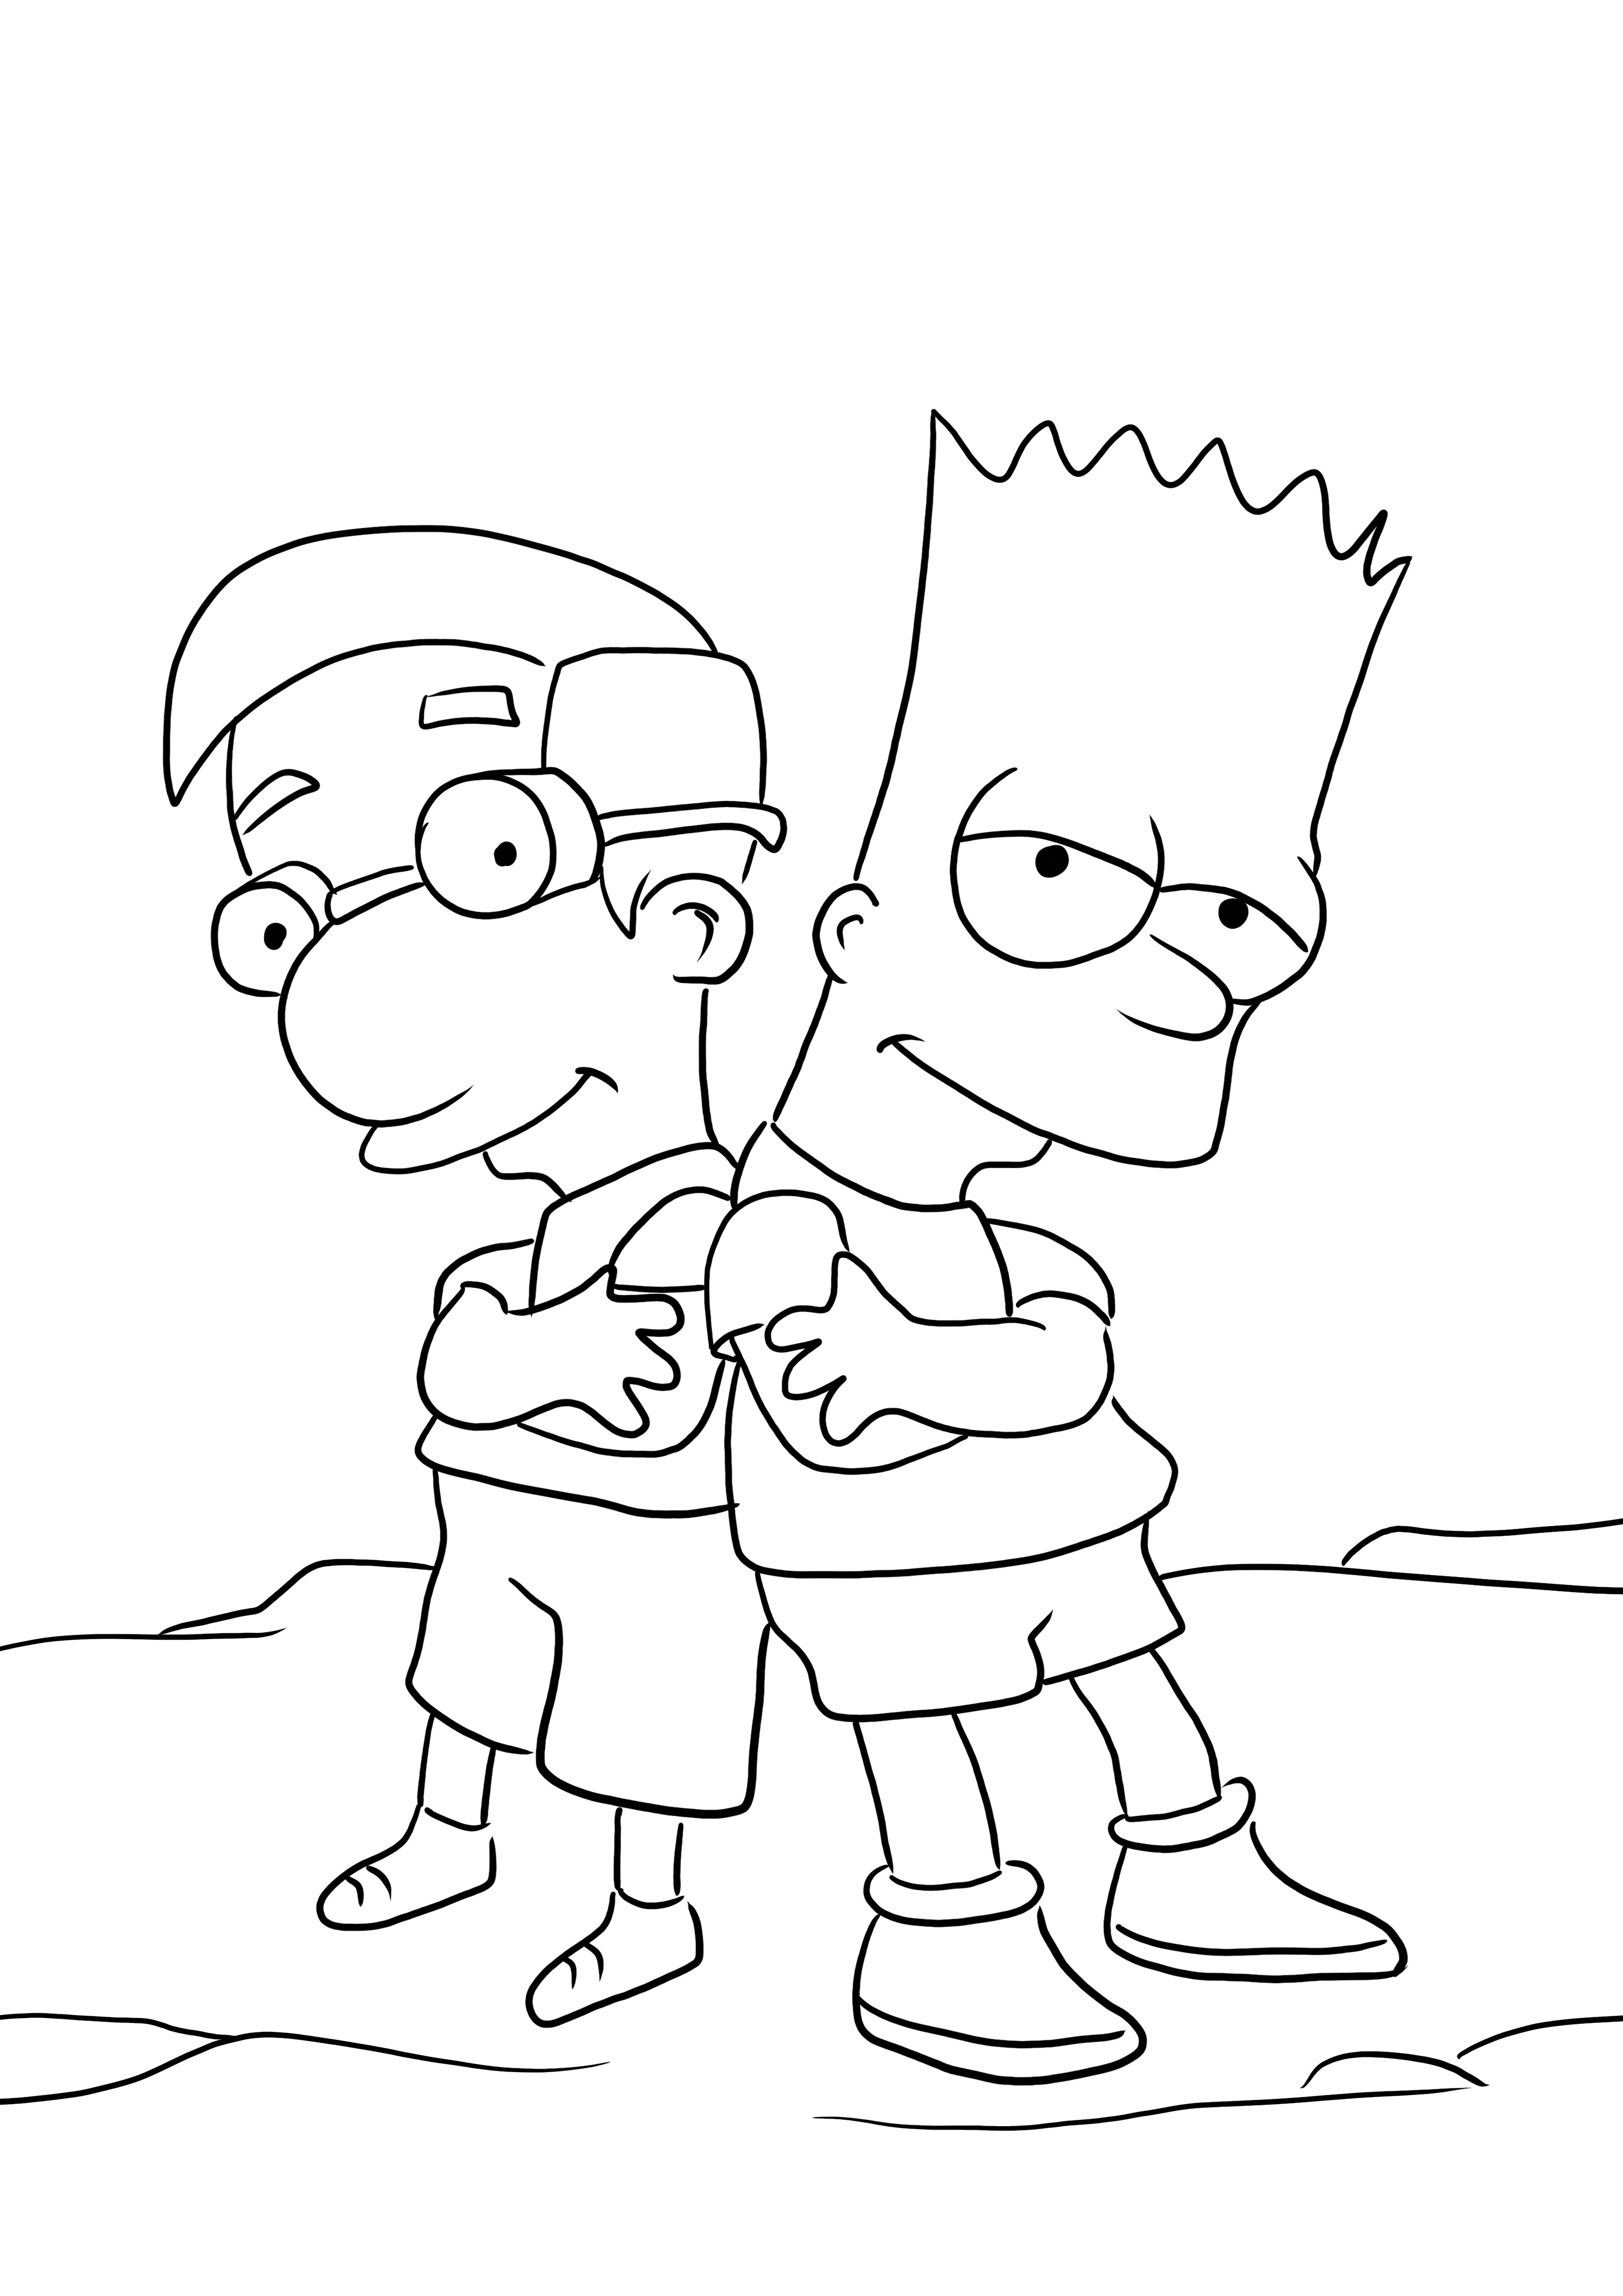 Bart ja Millhouse kuvan värittämiseen ja ilmaiseen lataamiseen